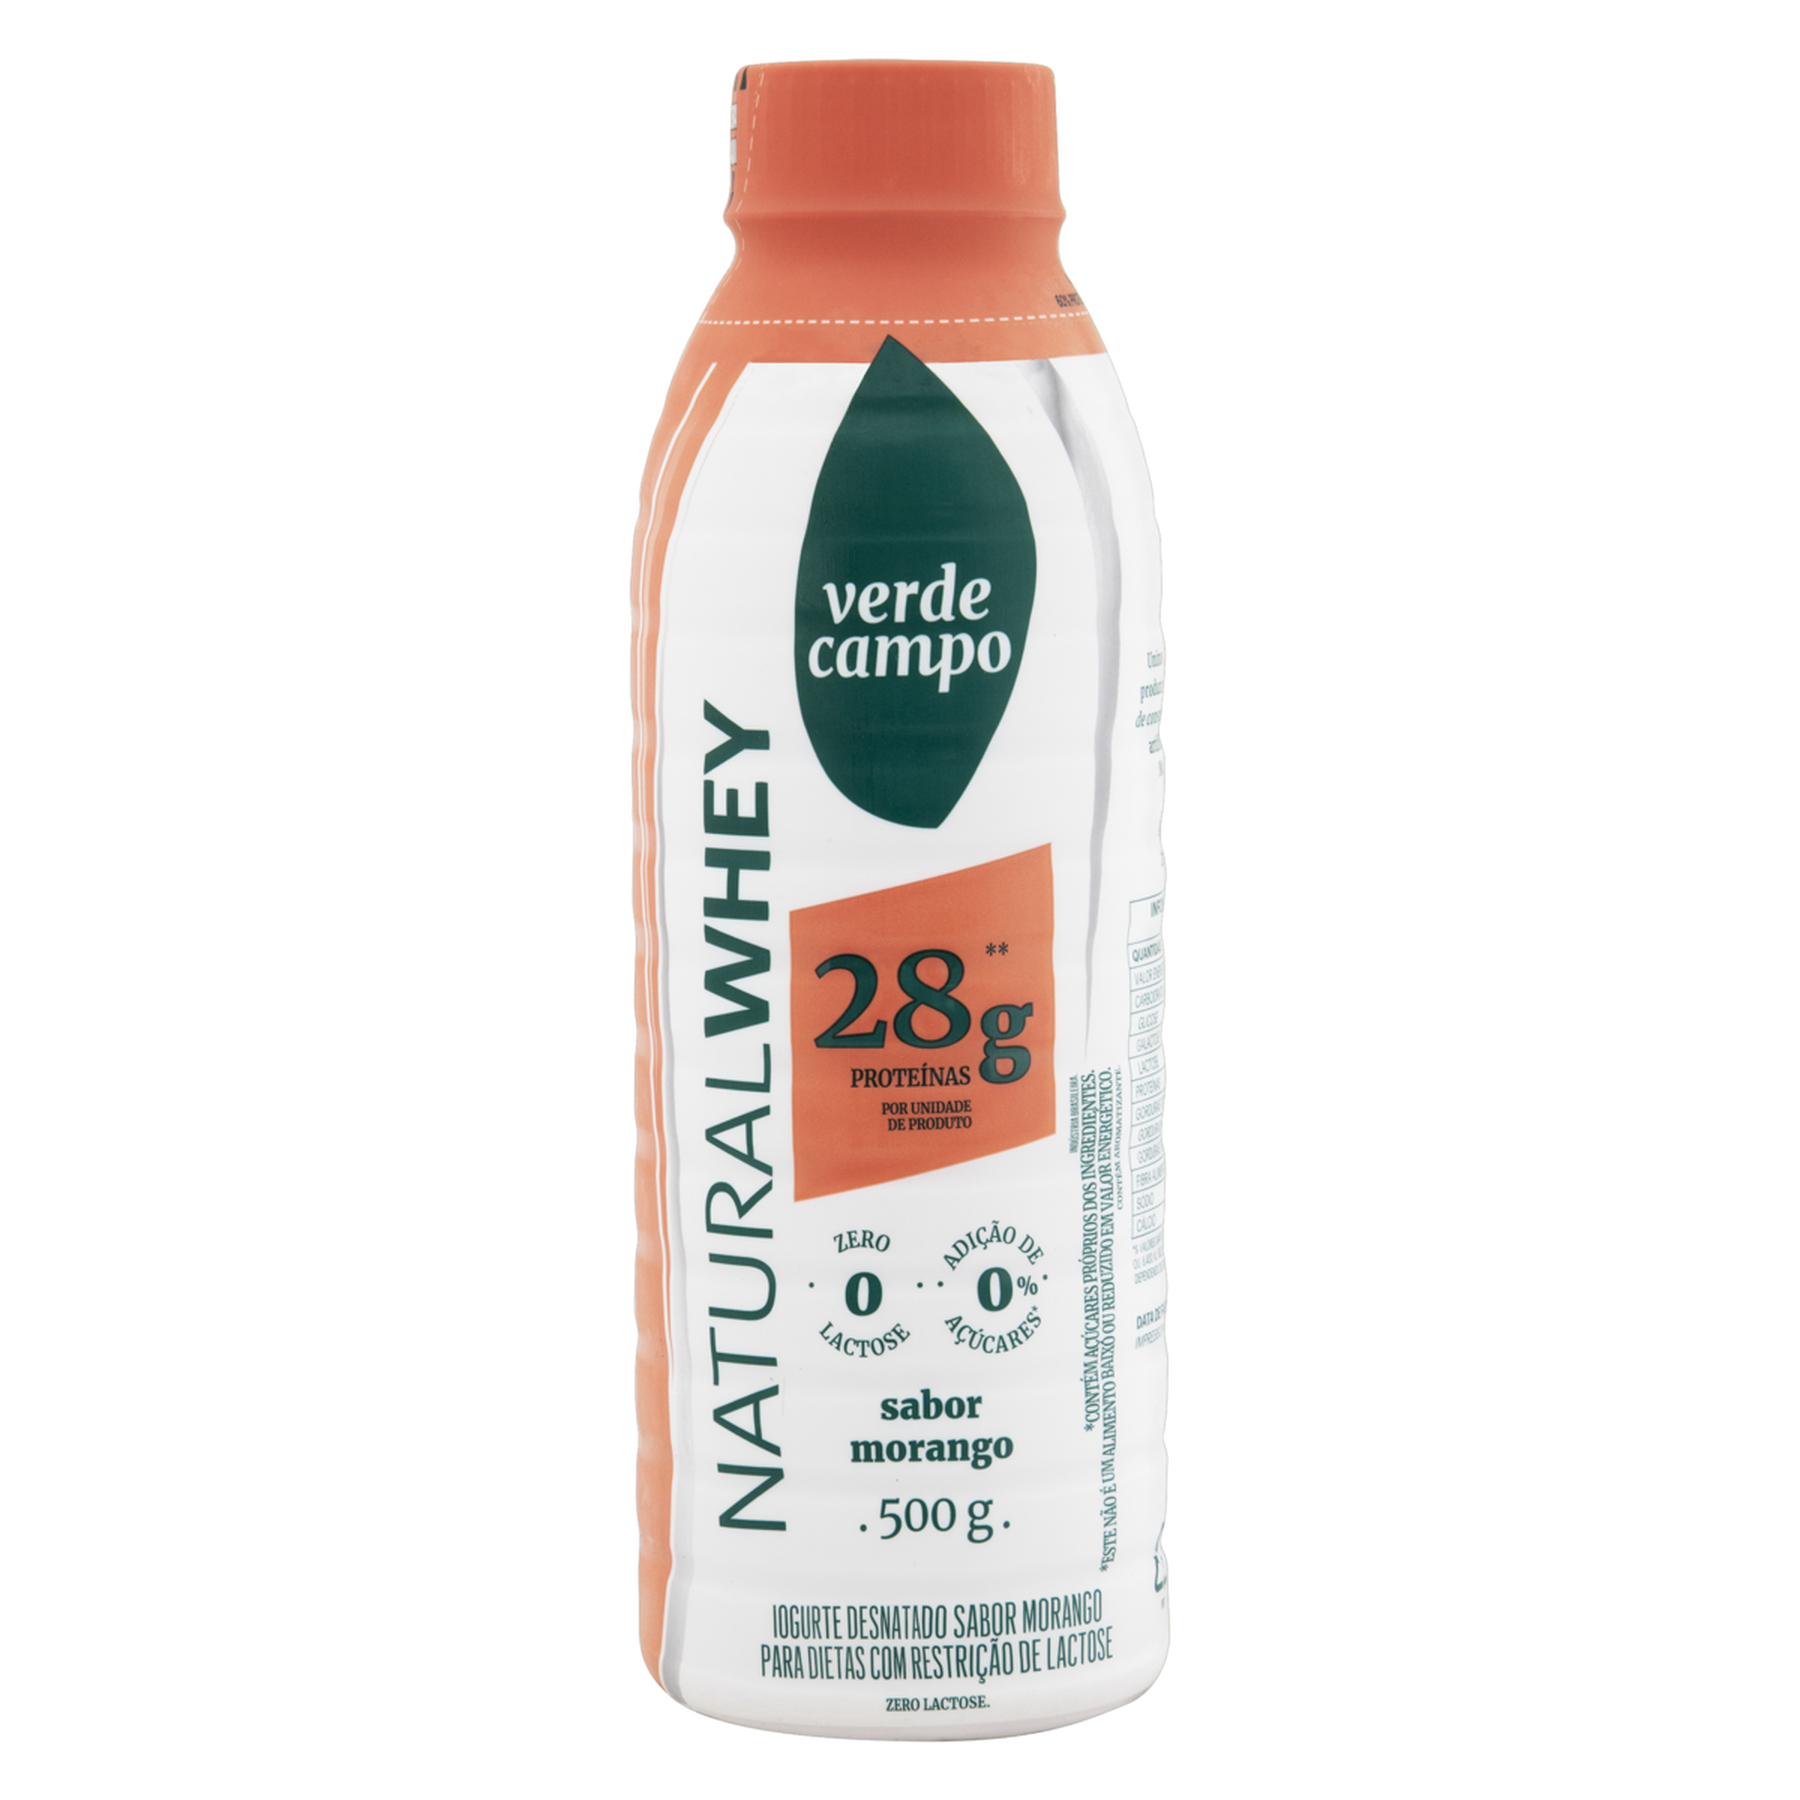 Iogurte Desnatado Morango Zero Lactose Verde Campo Natural Whey 28g de Proteína Garrafa 500g